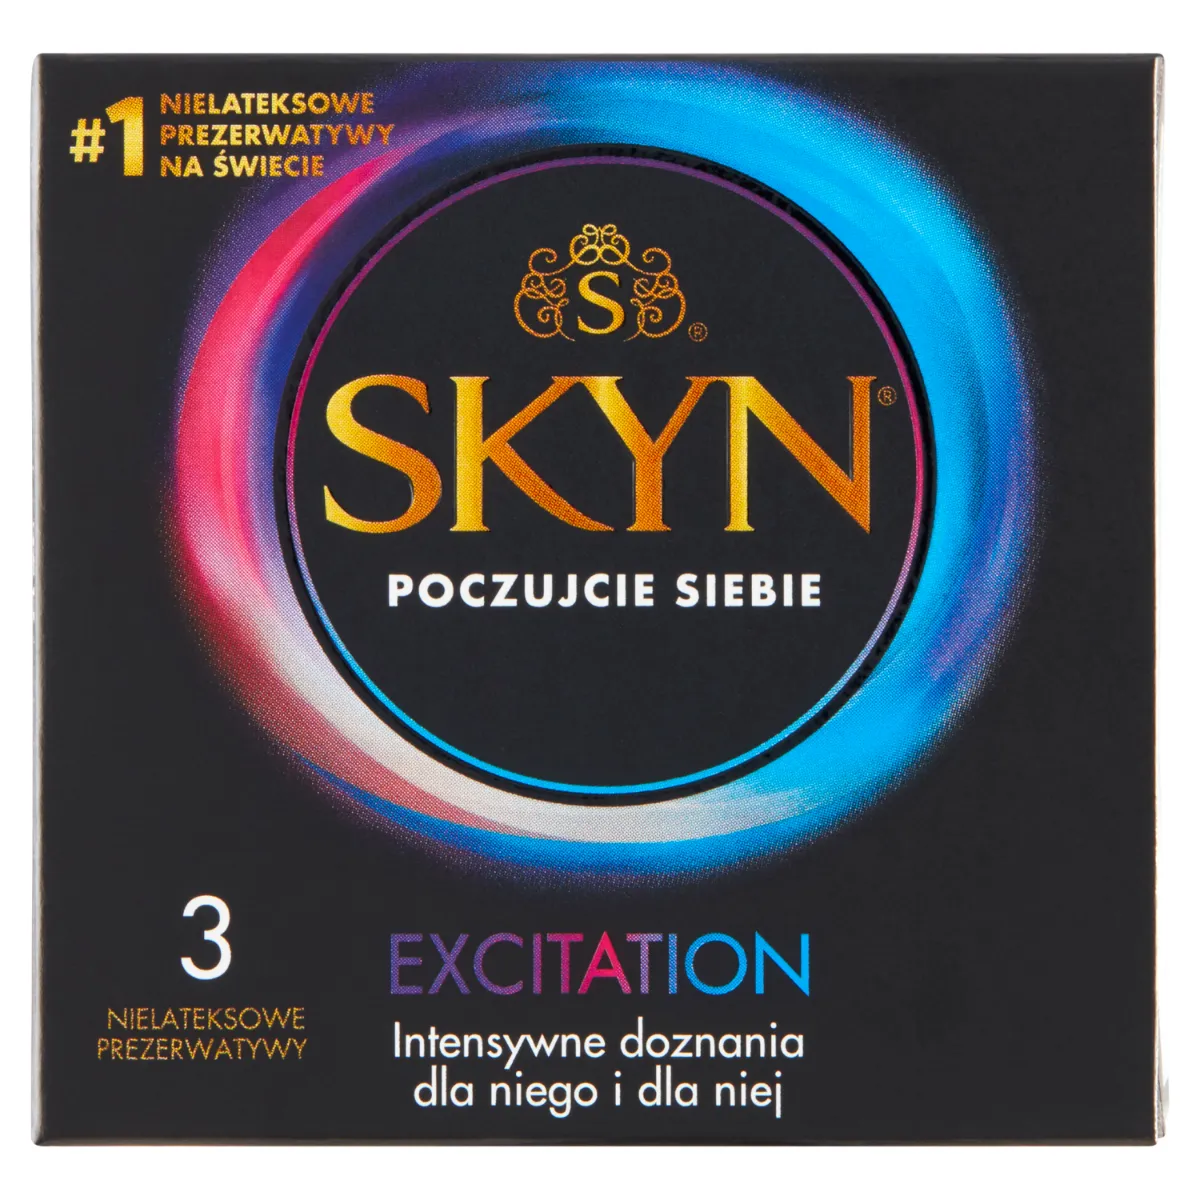 SKYN Excitation nielateksowe prezerwatywy, 3 szt.